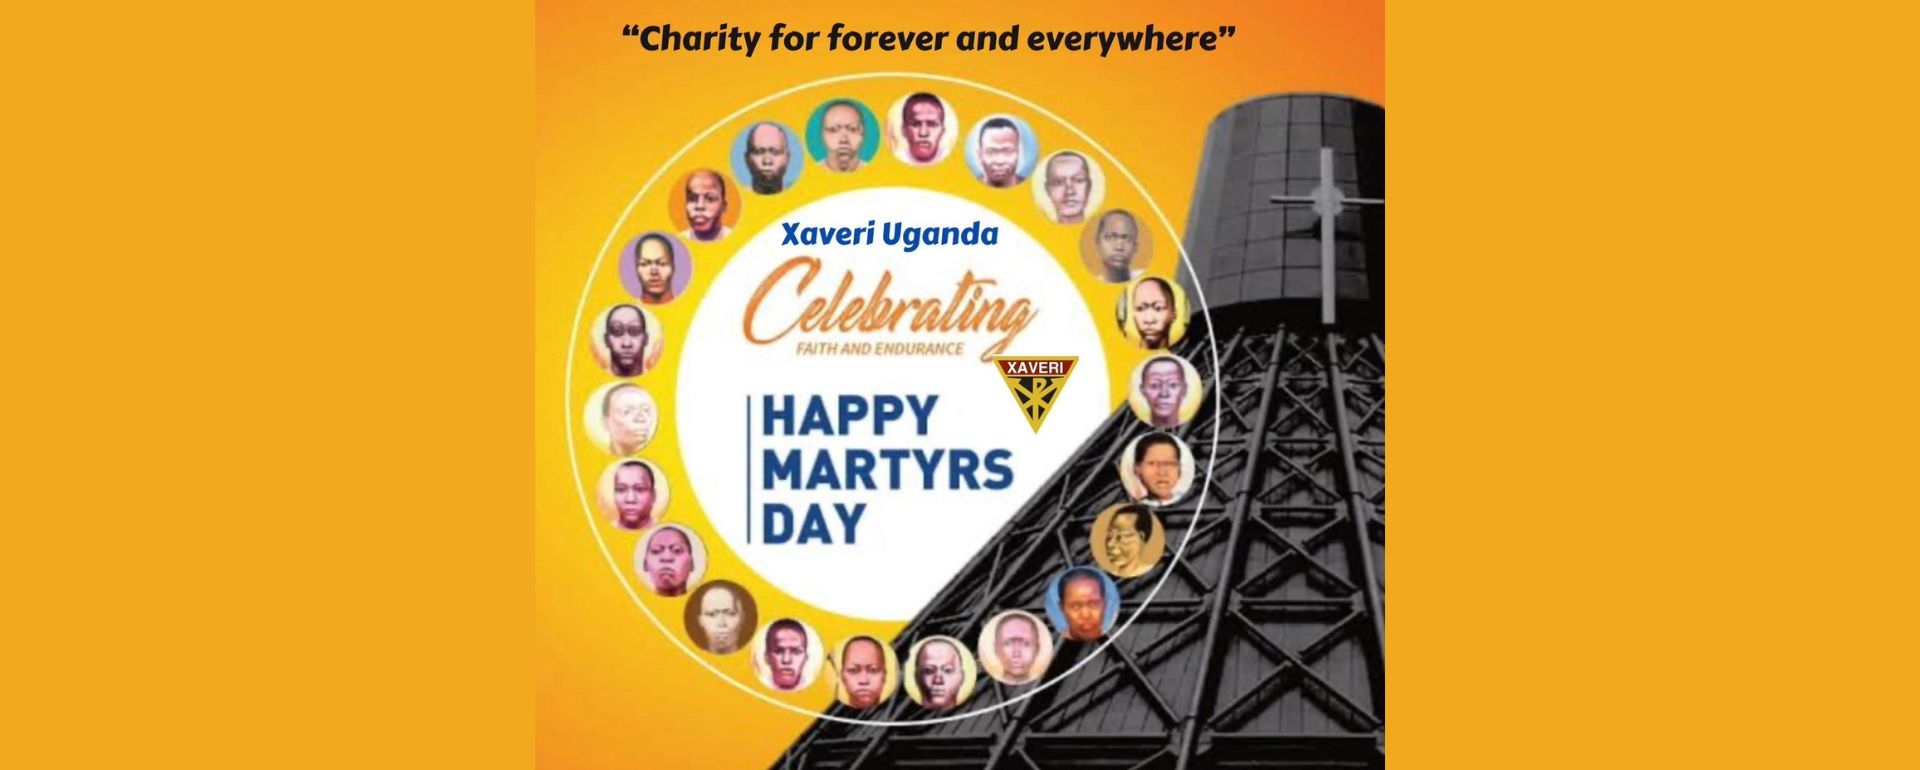 Uganda Martyrs’ Day celebration